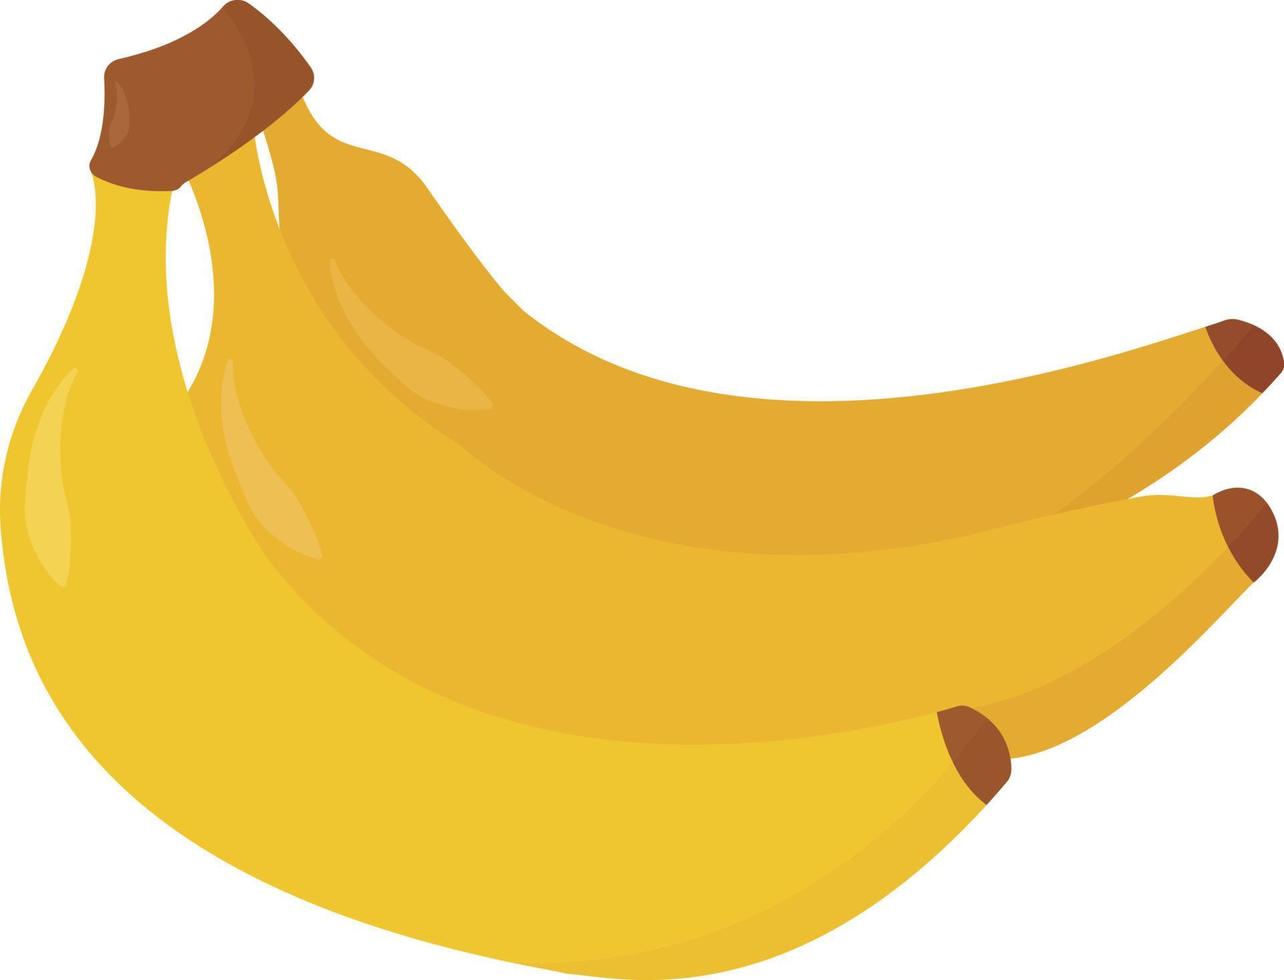 bananes fraîches, illustration, vecteur sur fond blanc.